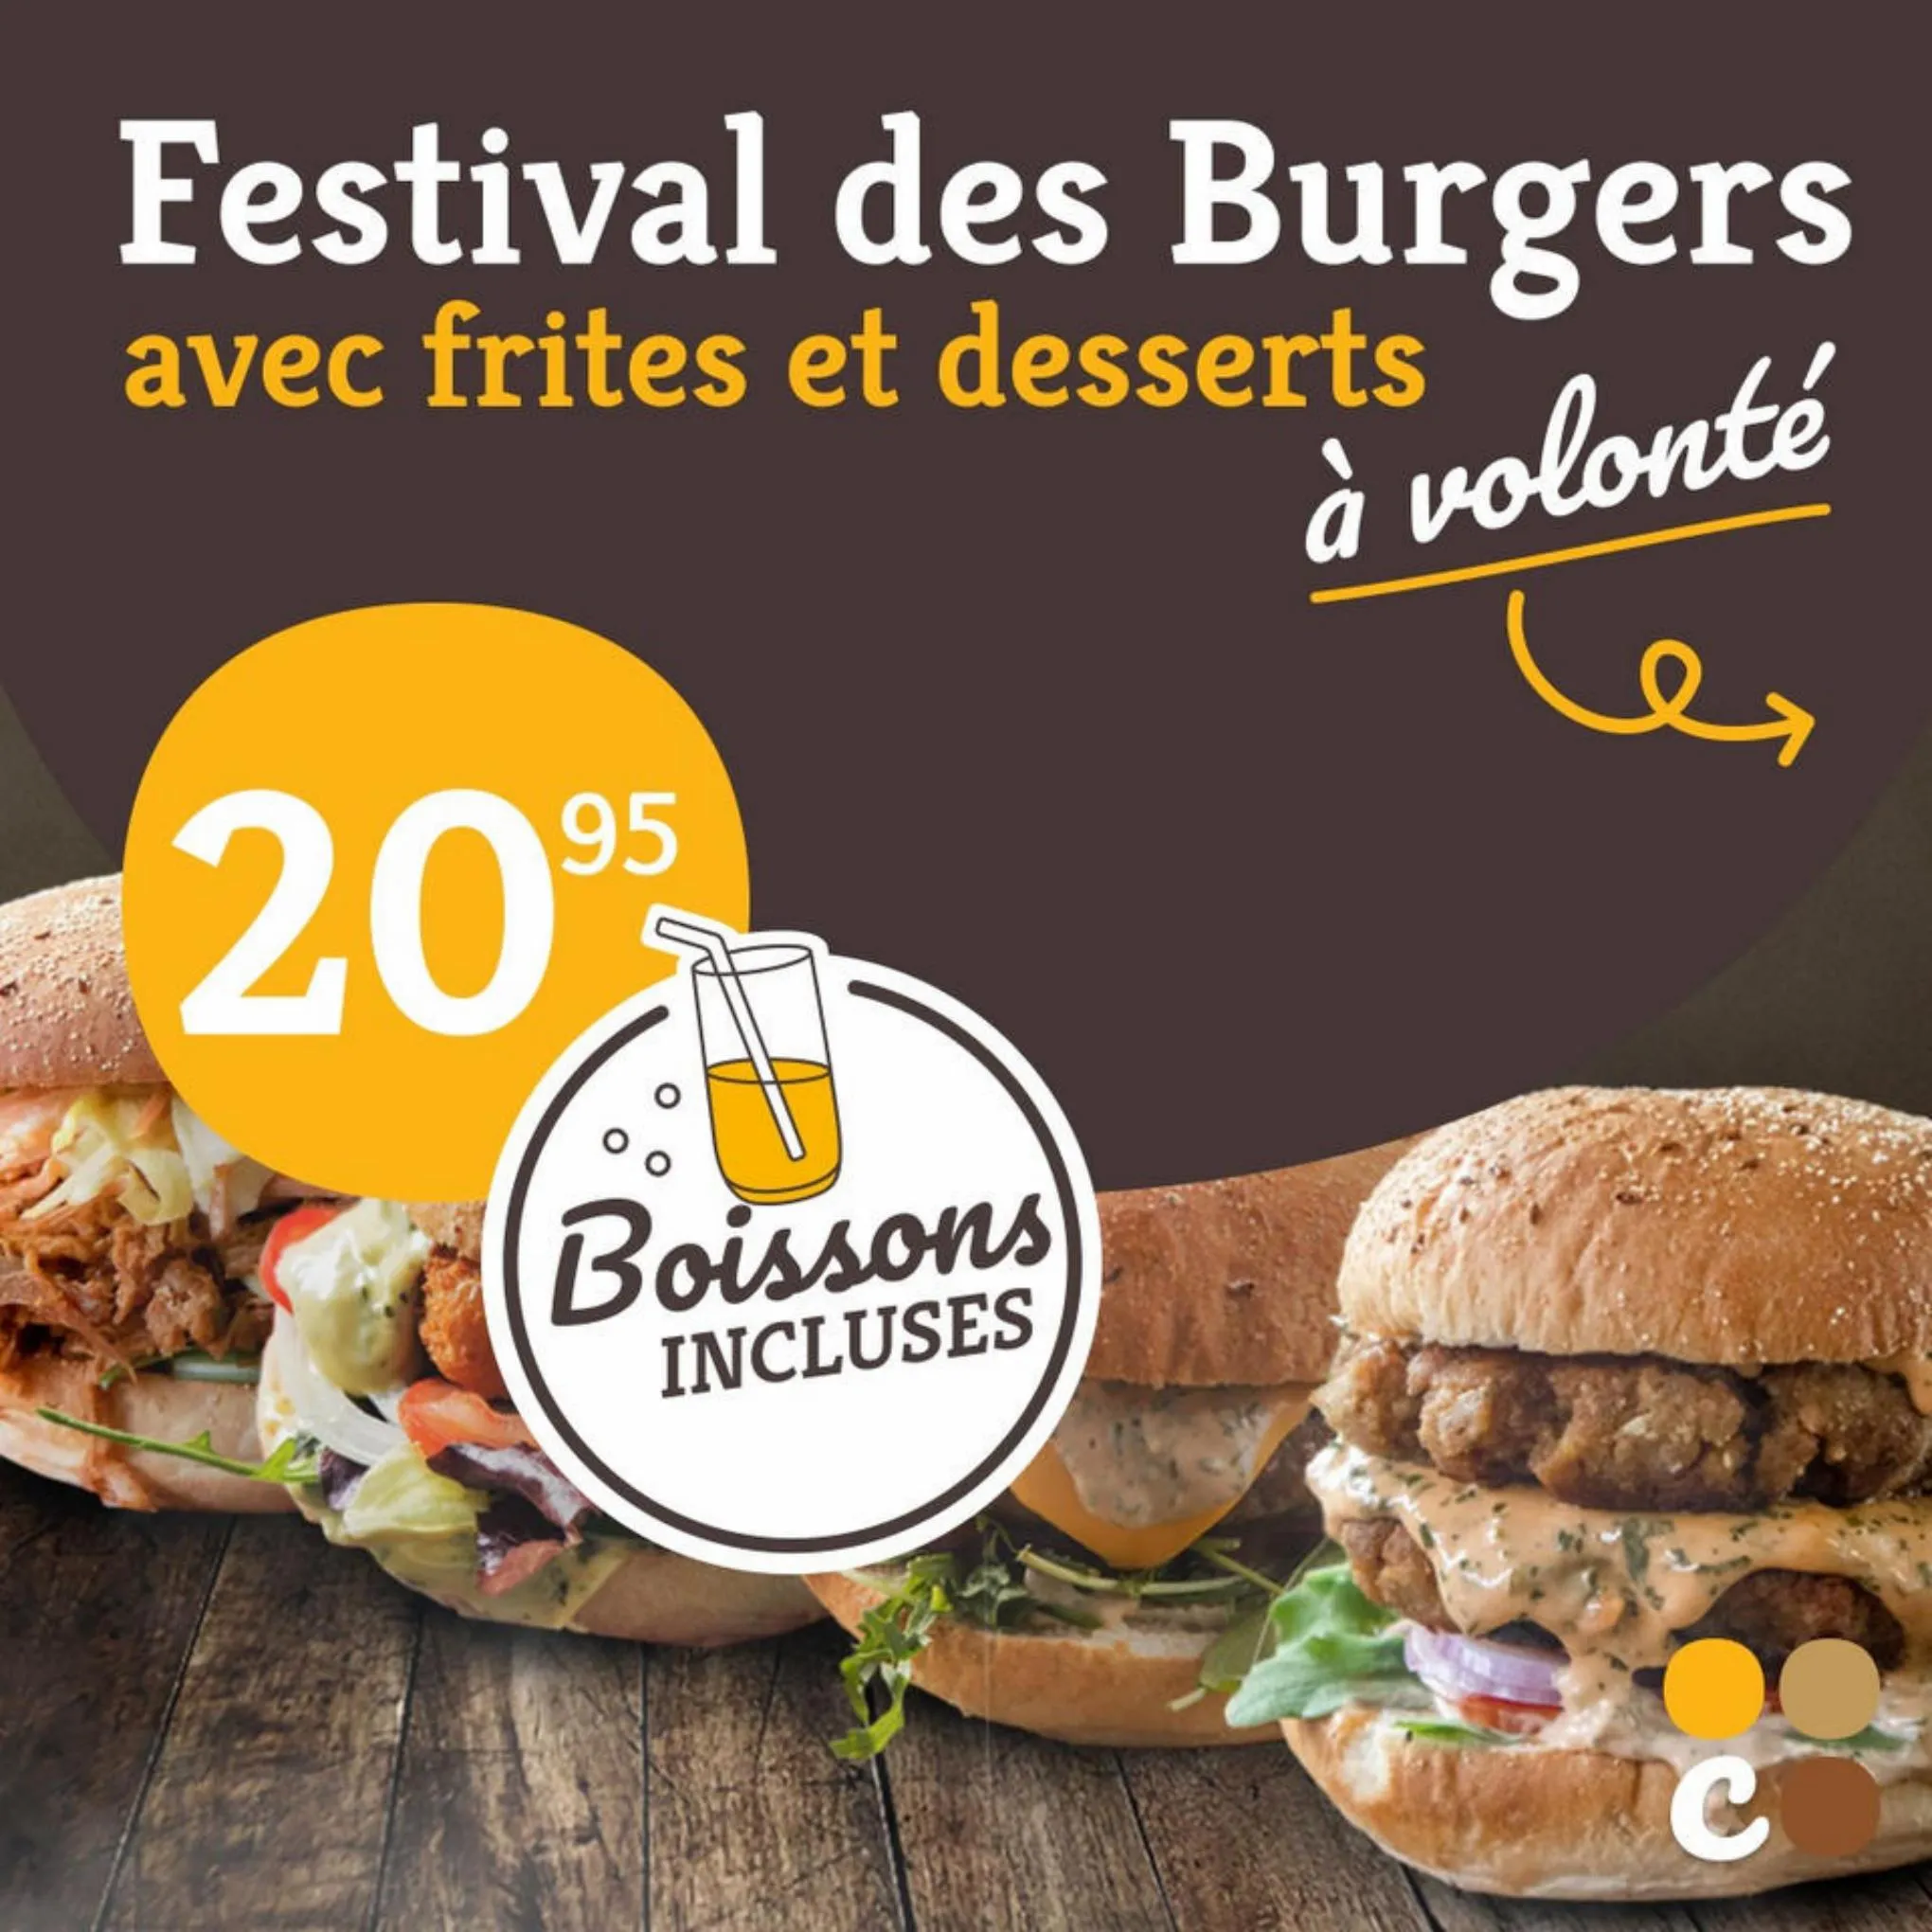 Catalogue Festival des Burgers, page 00001